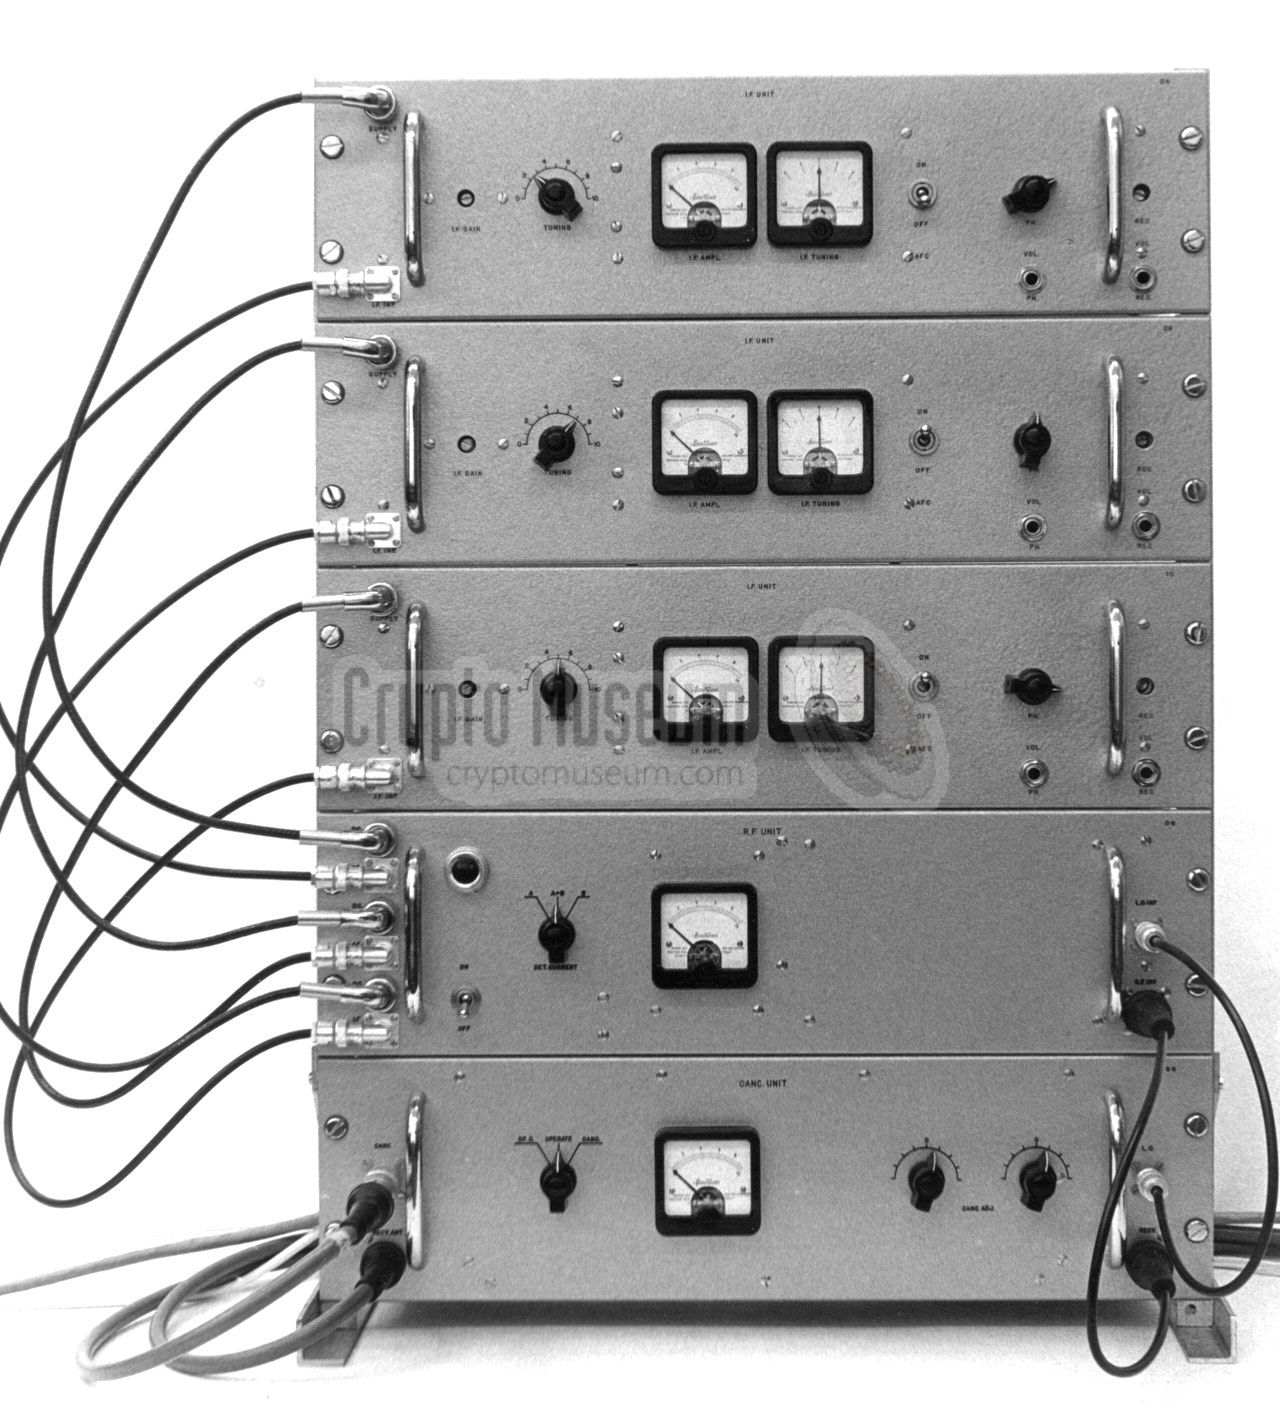 EC V receiver rack